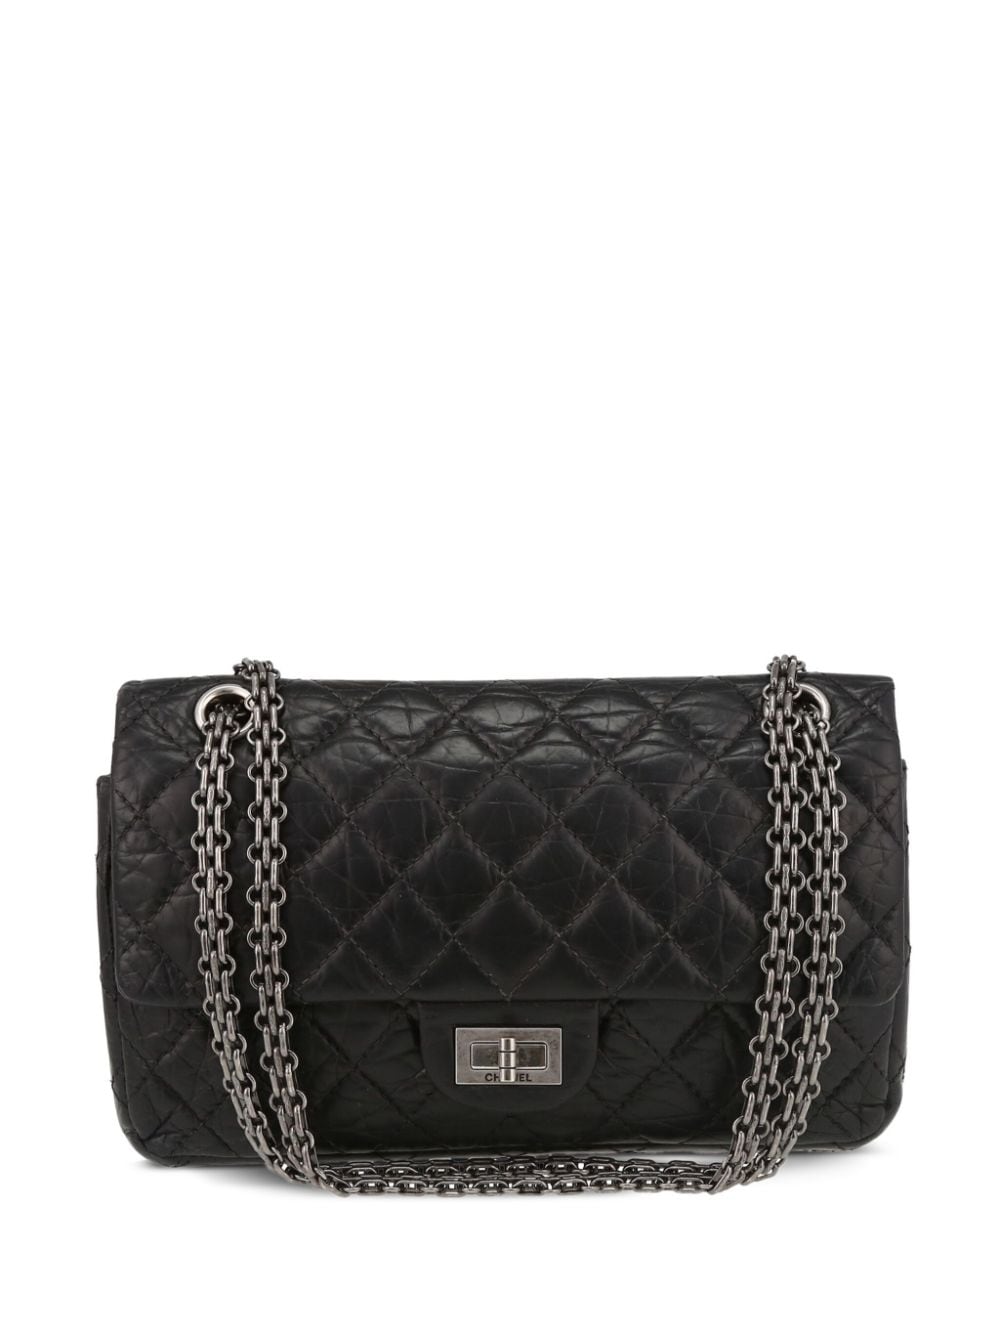 Pre-owned Chanel 2021 2.55 Reissue Shoulder Bag In Black